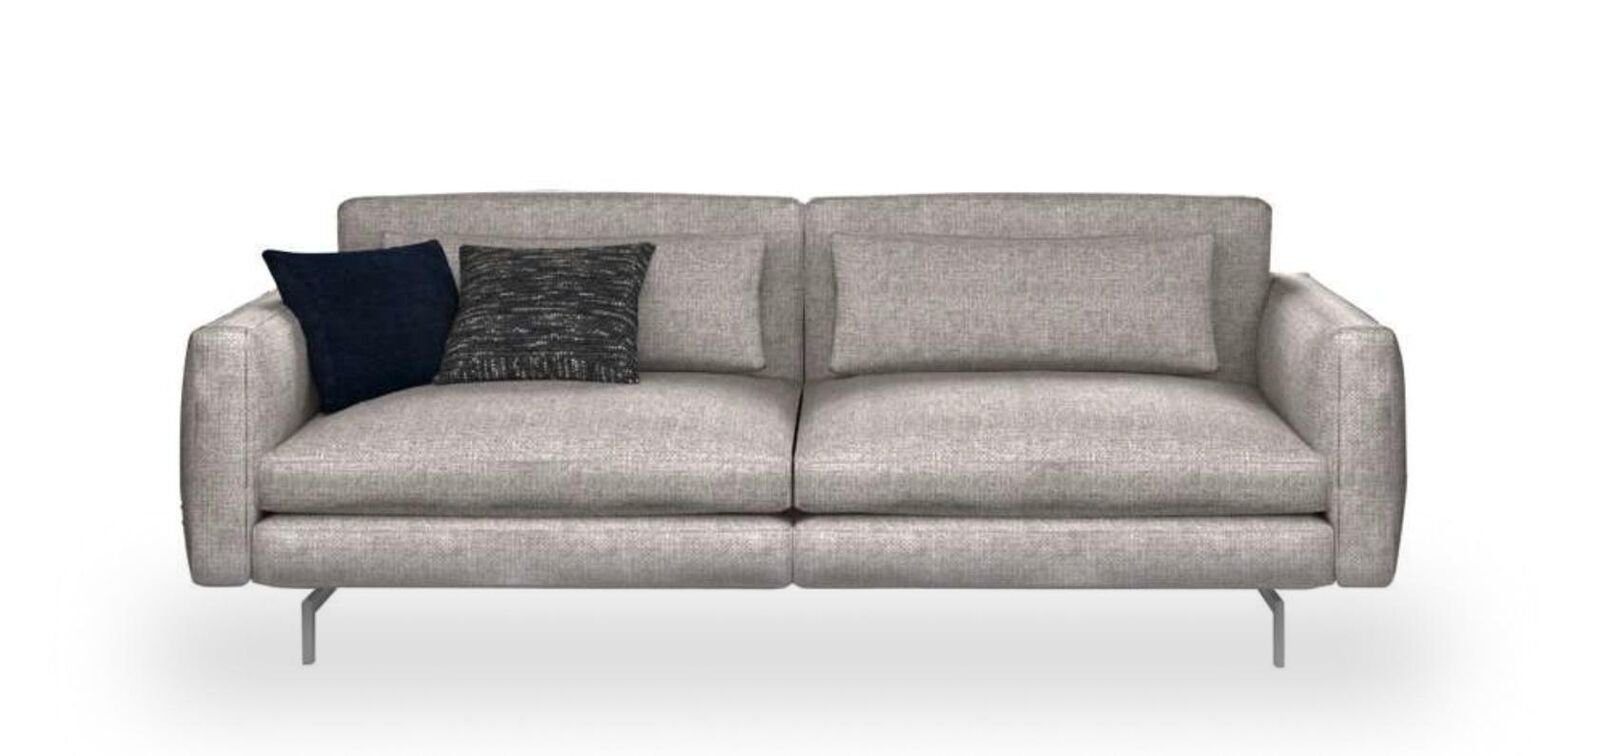 JVmoebel Sofa Dreisitzer Couch Moderne Sofas, Europa Made Textil Wohnzimmermöbel 1 Teile, in